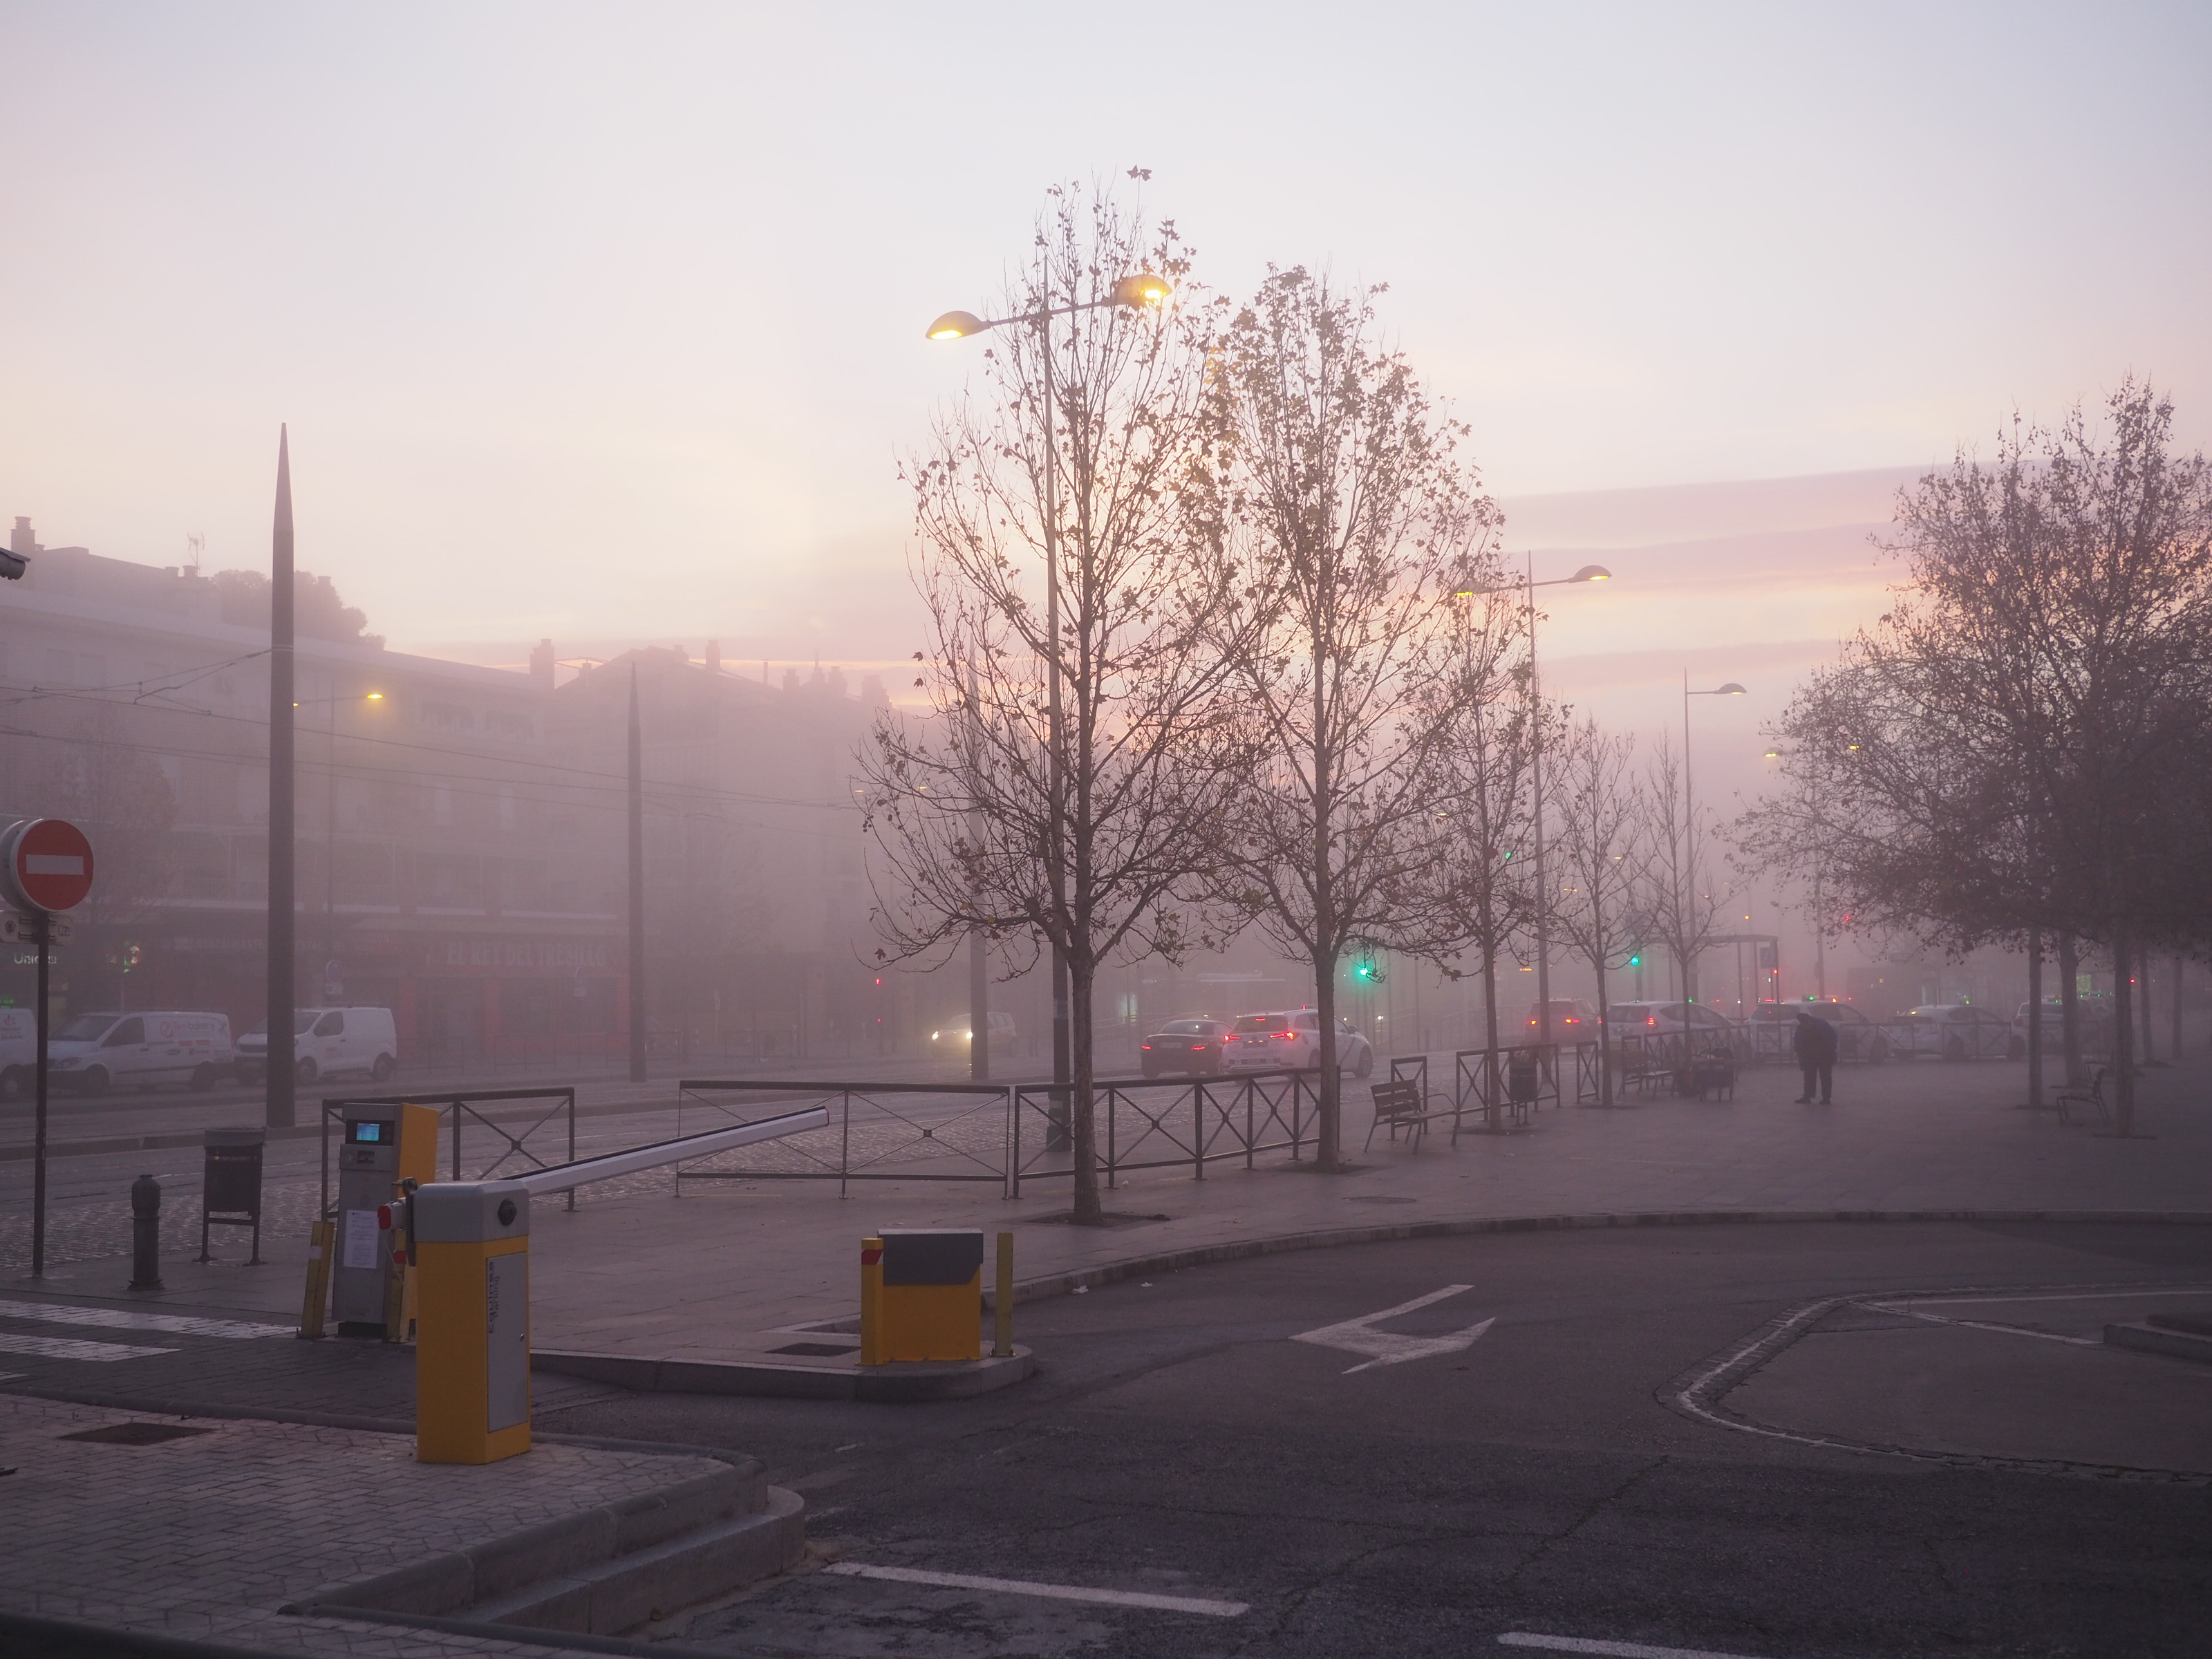 Plaza de la estación de bus está cubierta de niebla